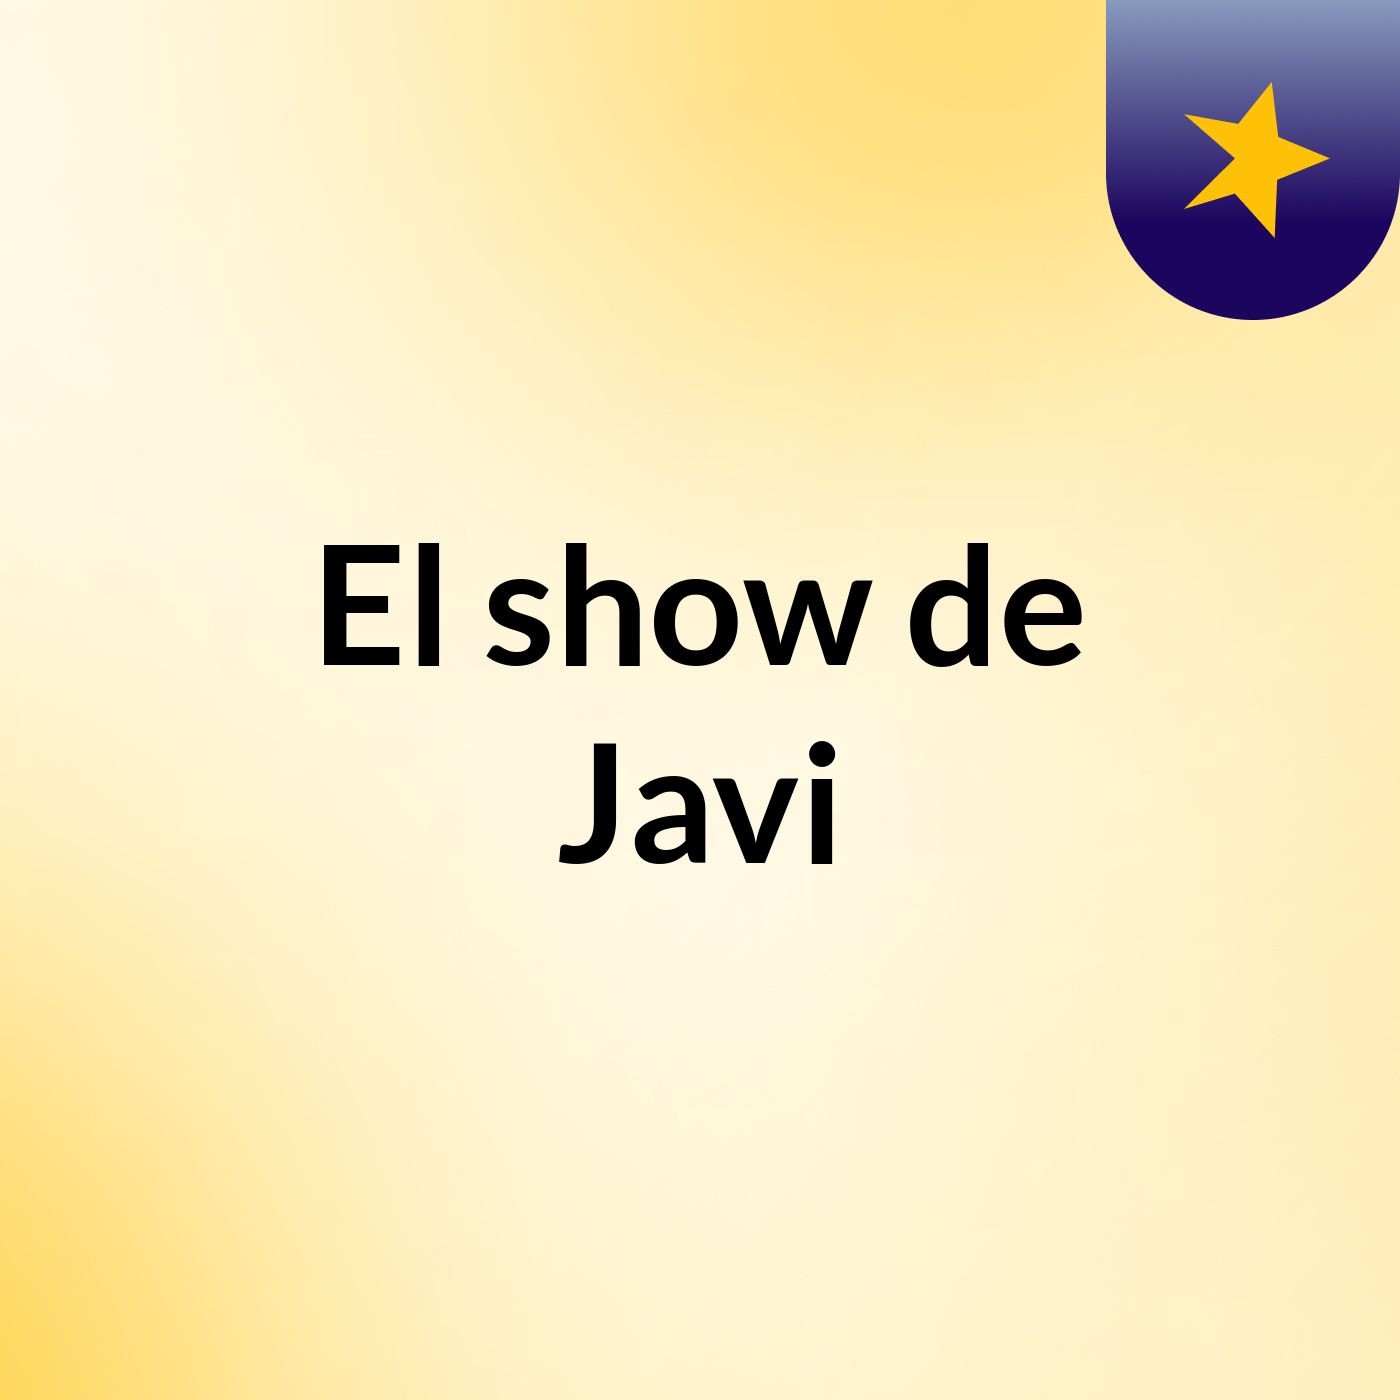 El show de Javi